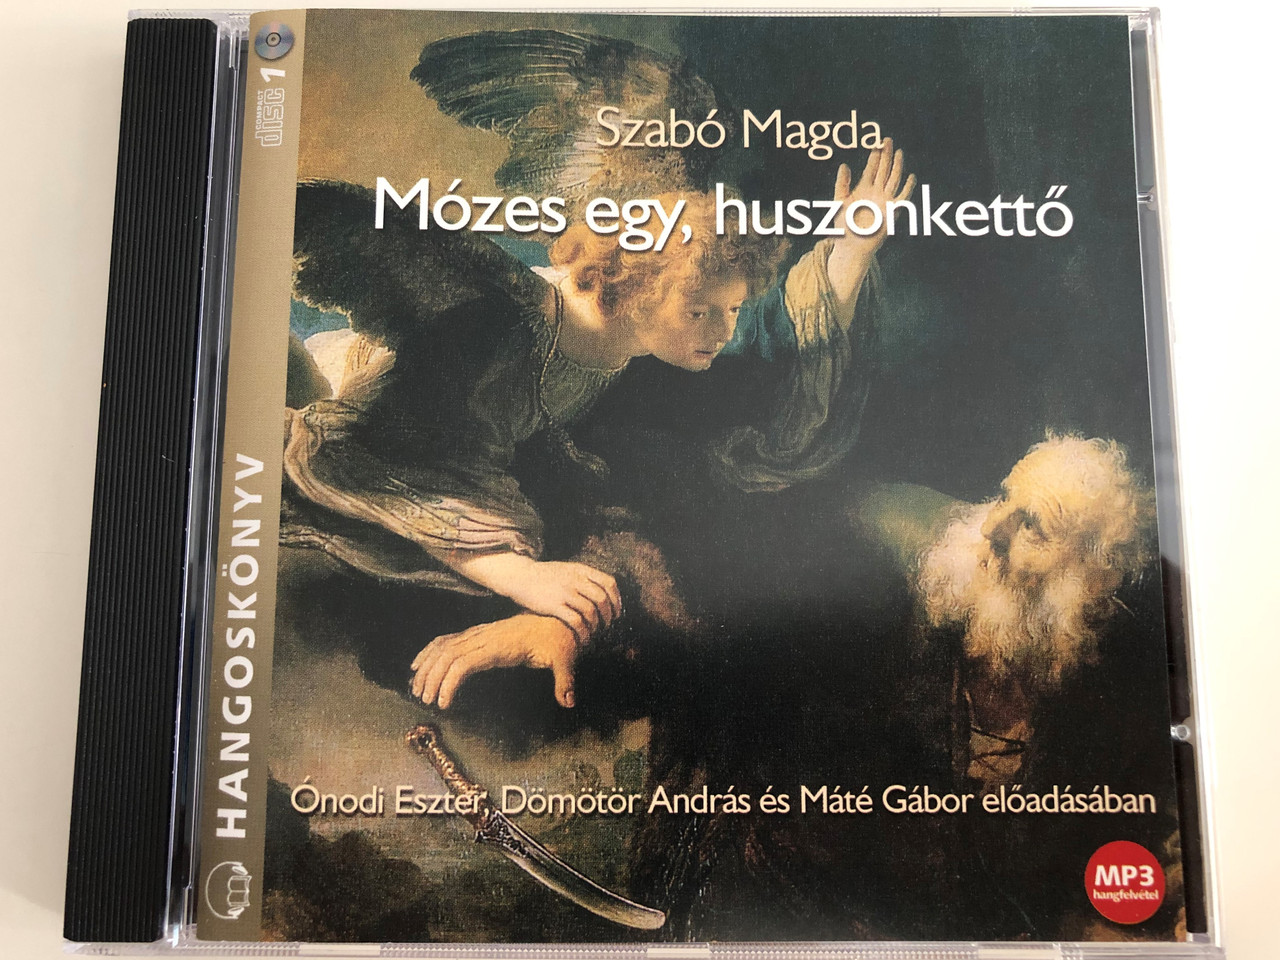 Mózes egy, huszonkettő by Szabó Magda / Hungarian Audio Book / MP3 CD /  Read by Ónodi Eszter, Dömötör András and Máté Gábor / Kossuth - Mojzer -  bibleinmylanguage